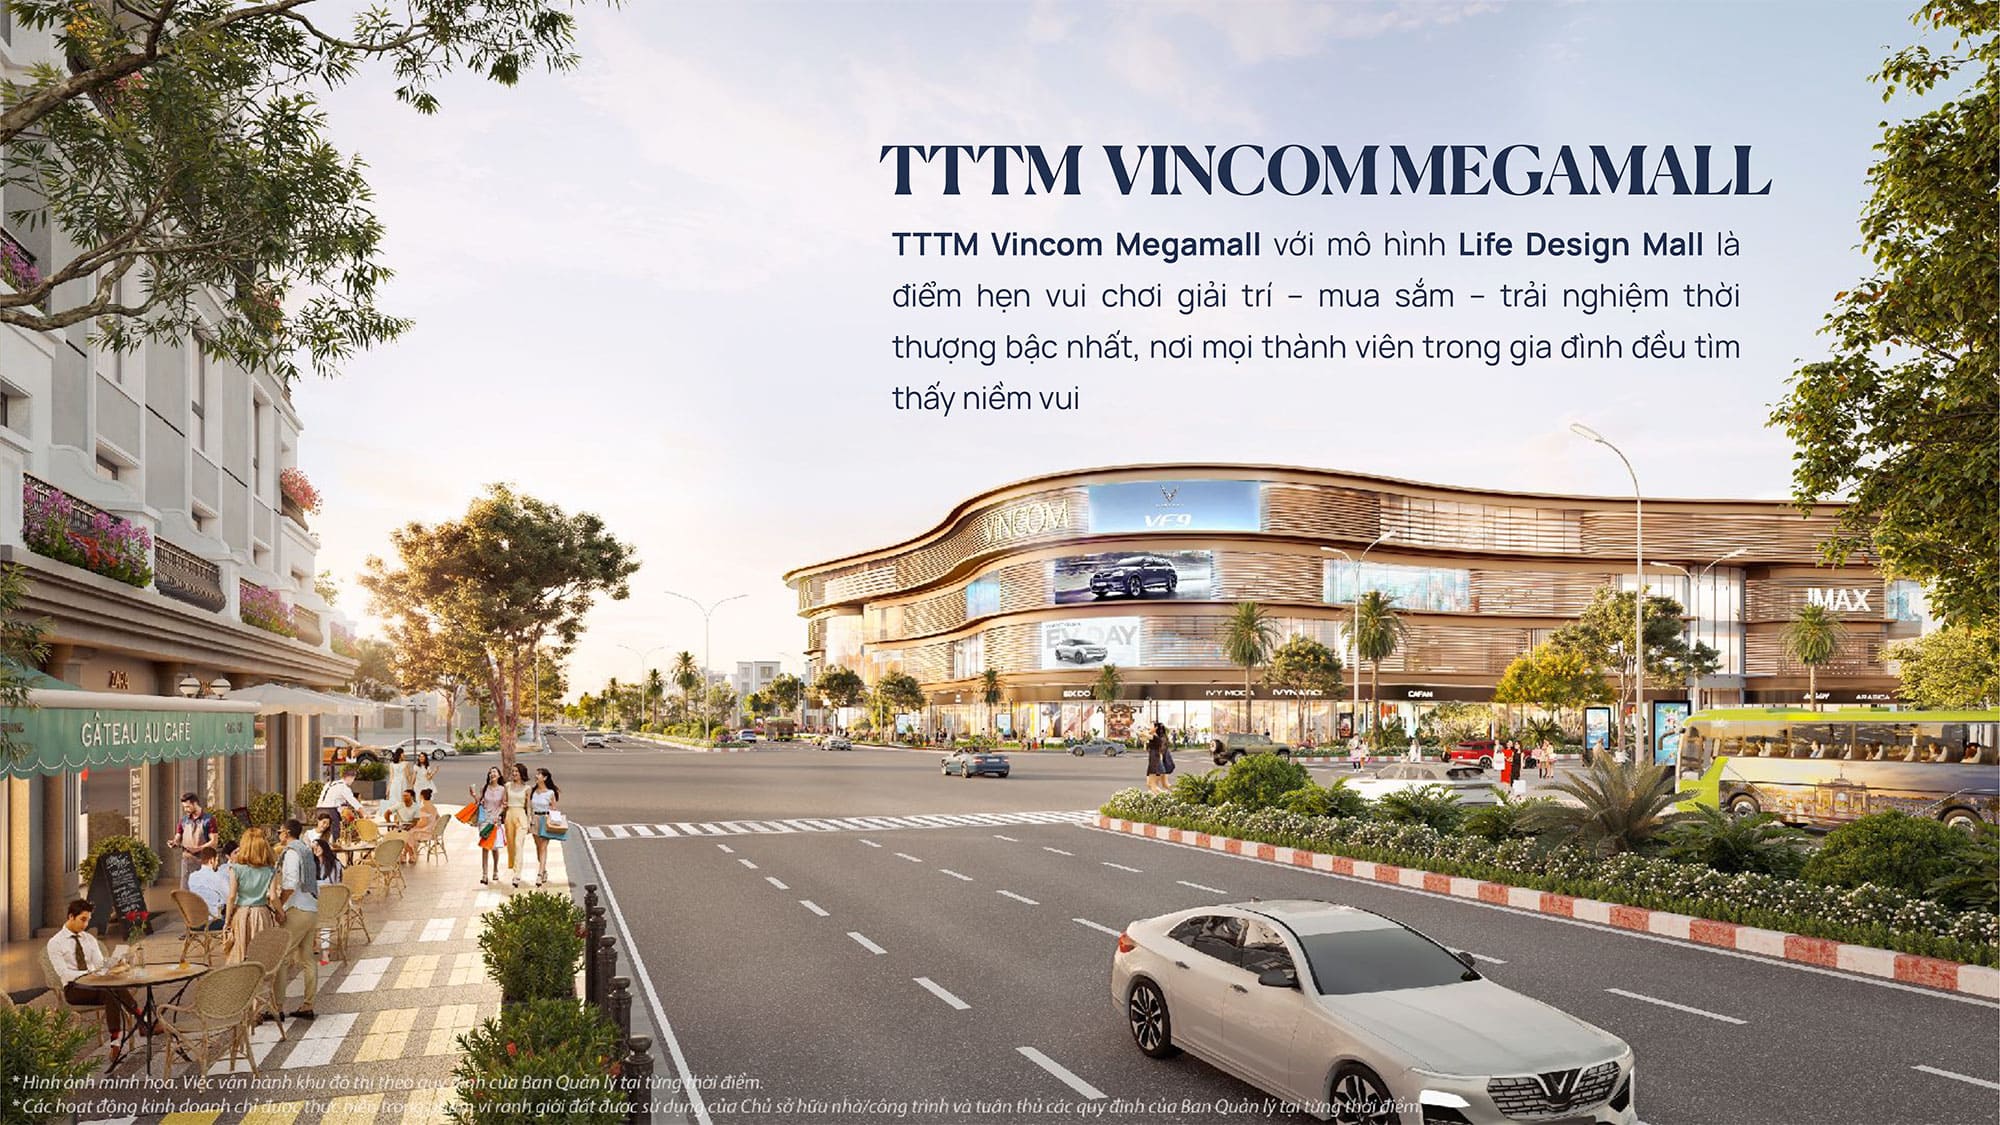 Tiện ích TTTM Vincom Megamall với mô hình Life Design Mall tại Vinhomes Royal Island.